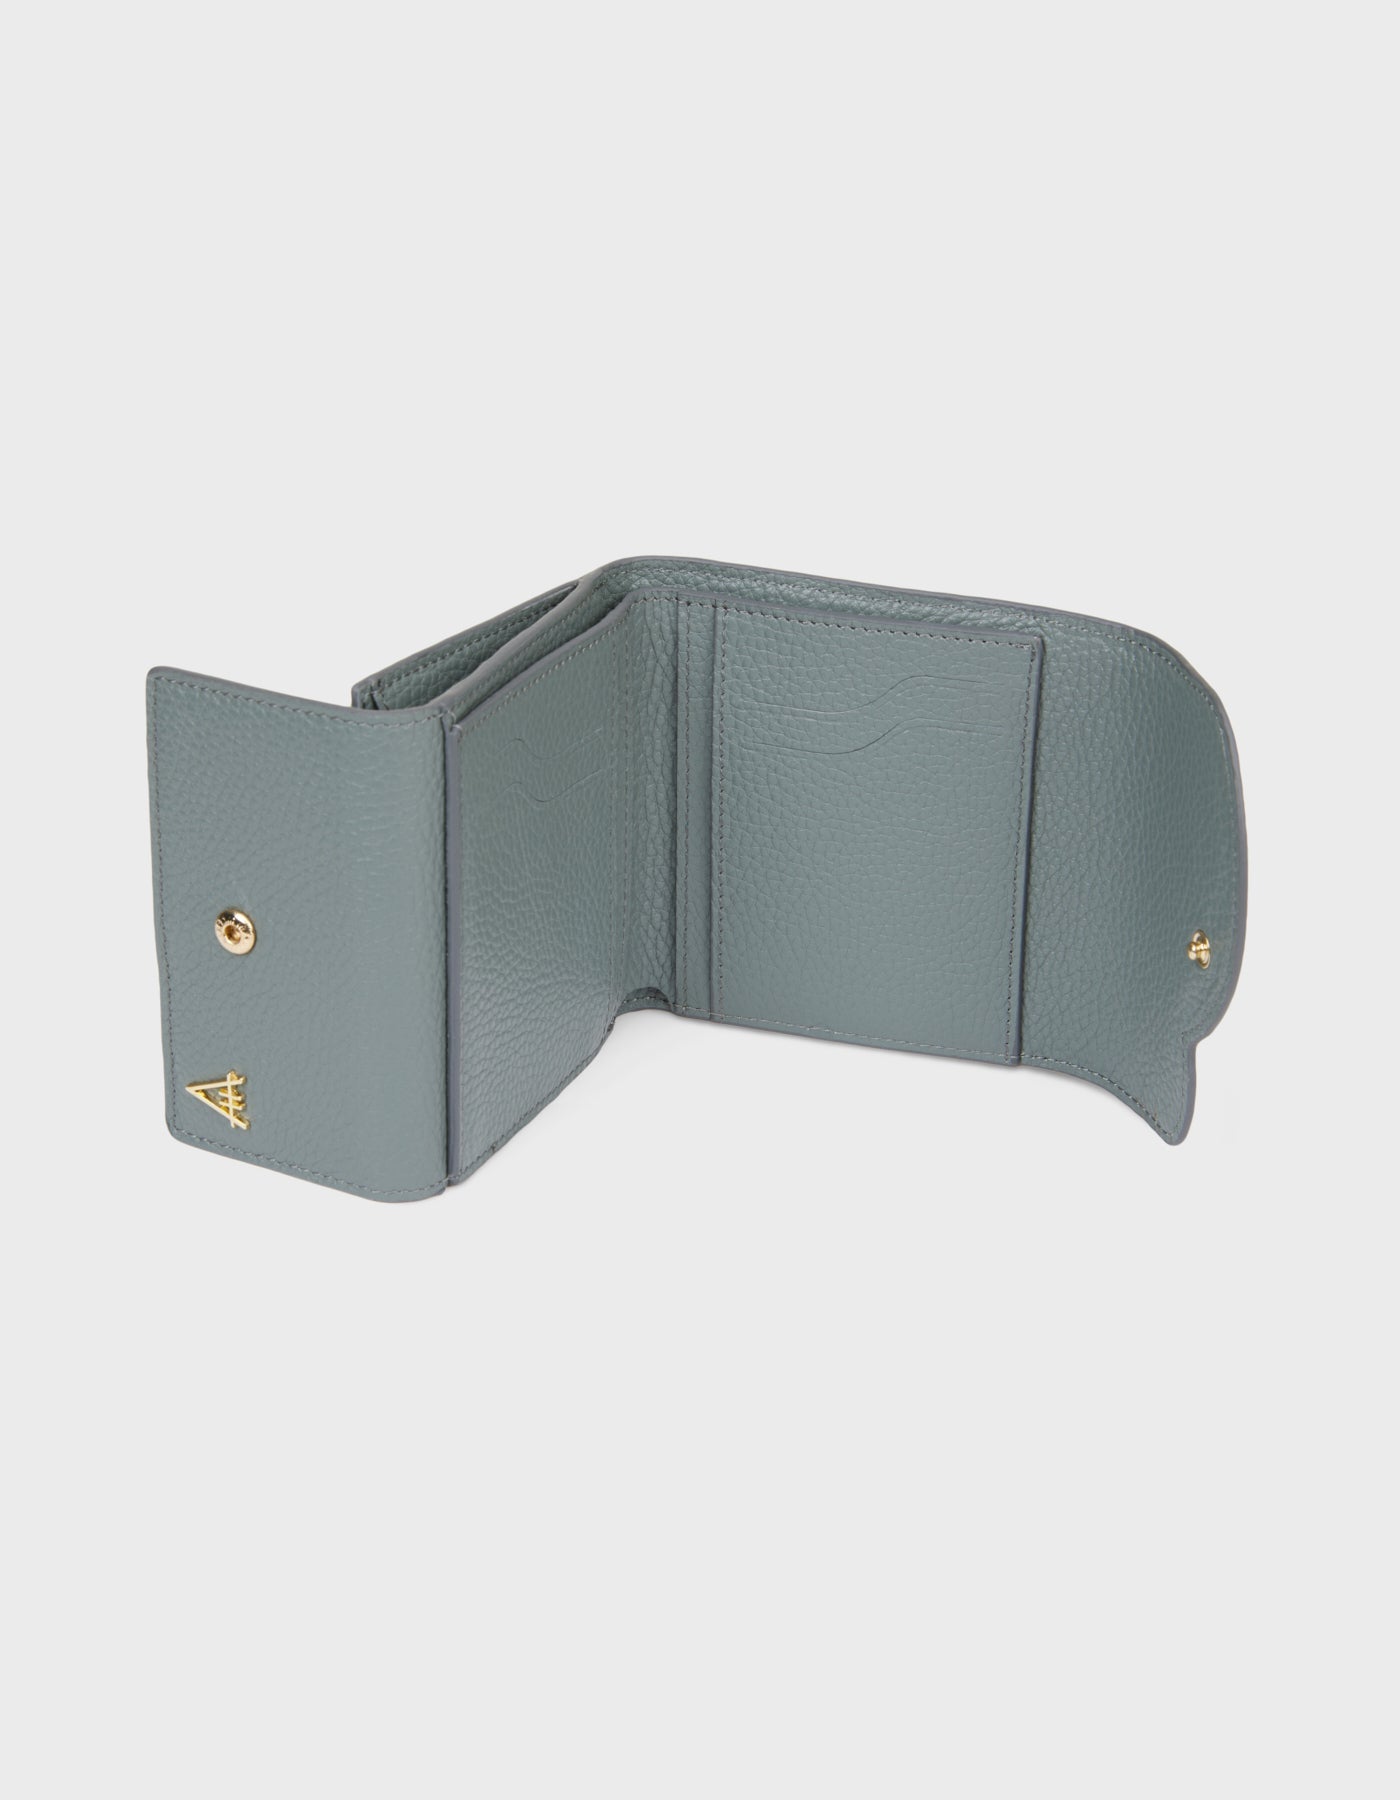 HiVa Atelier - Larus Compact Wallet Dusty Blue